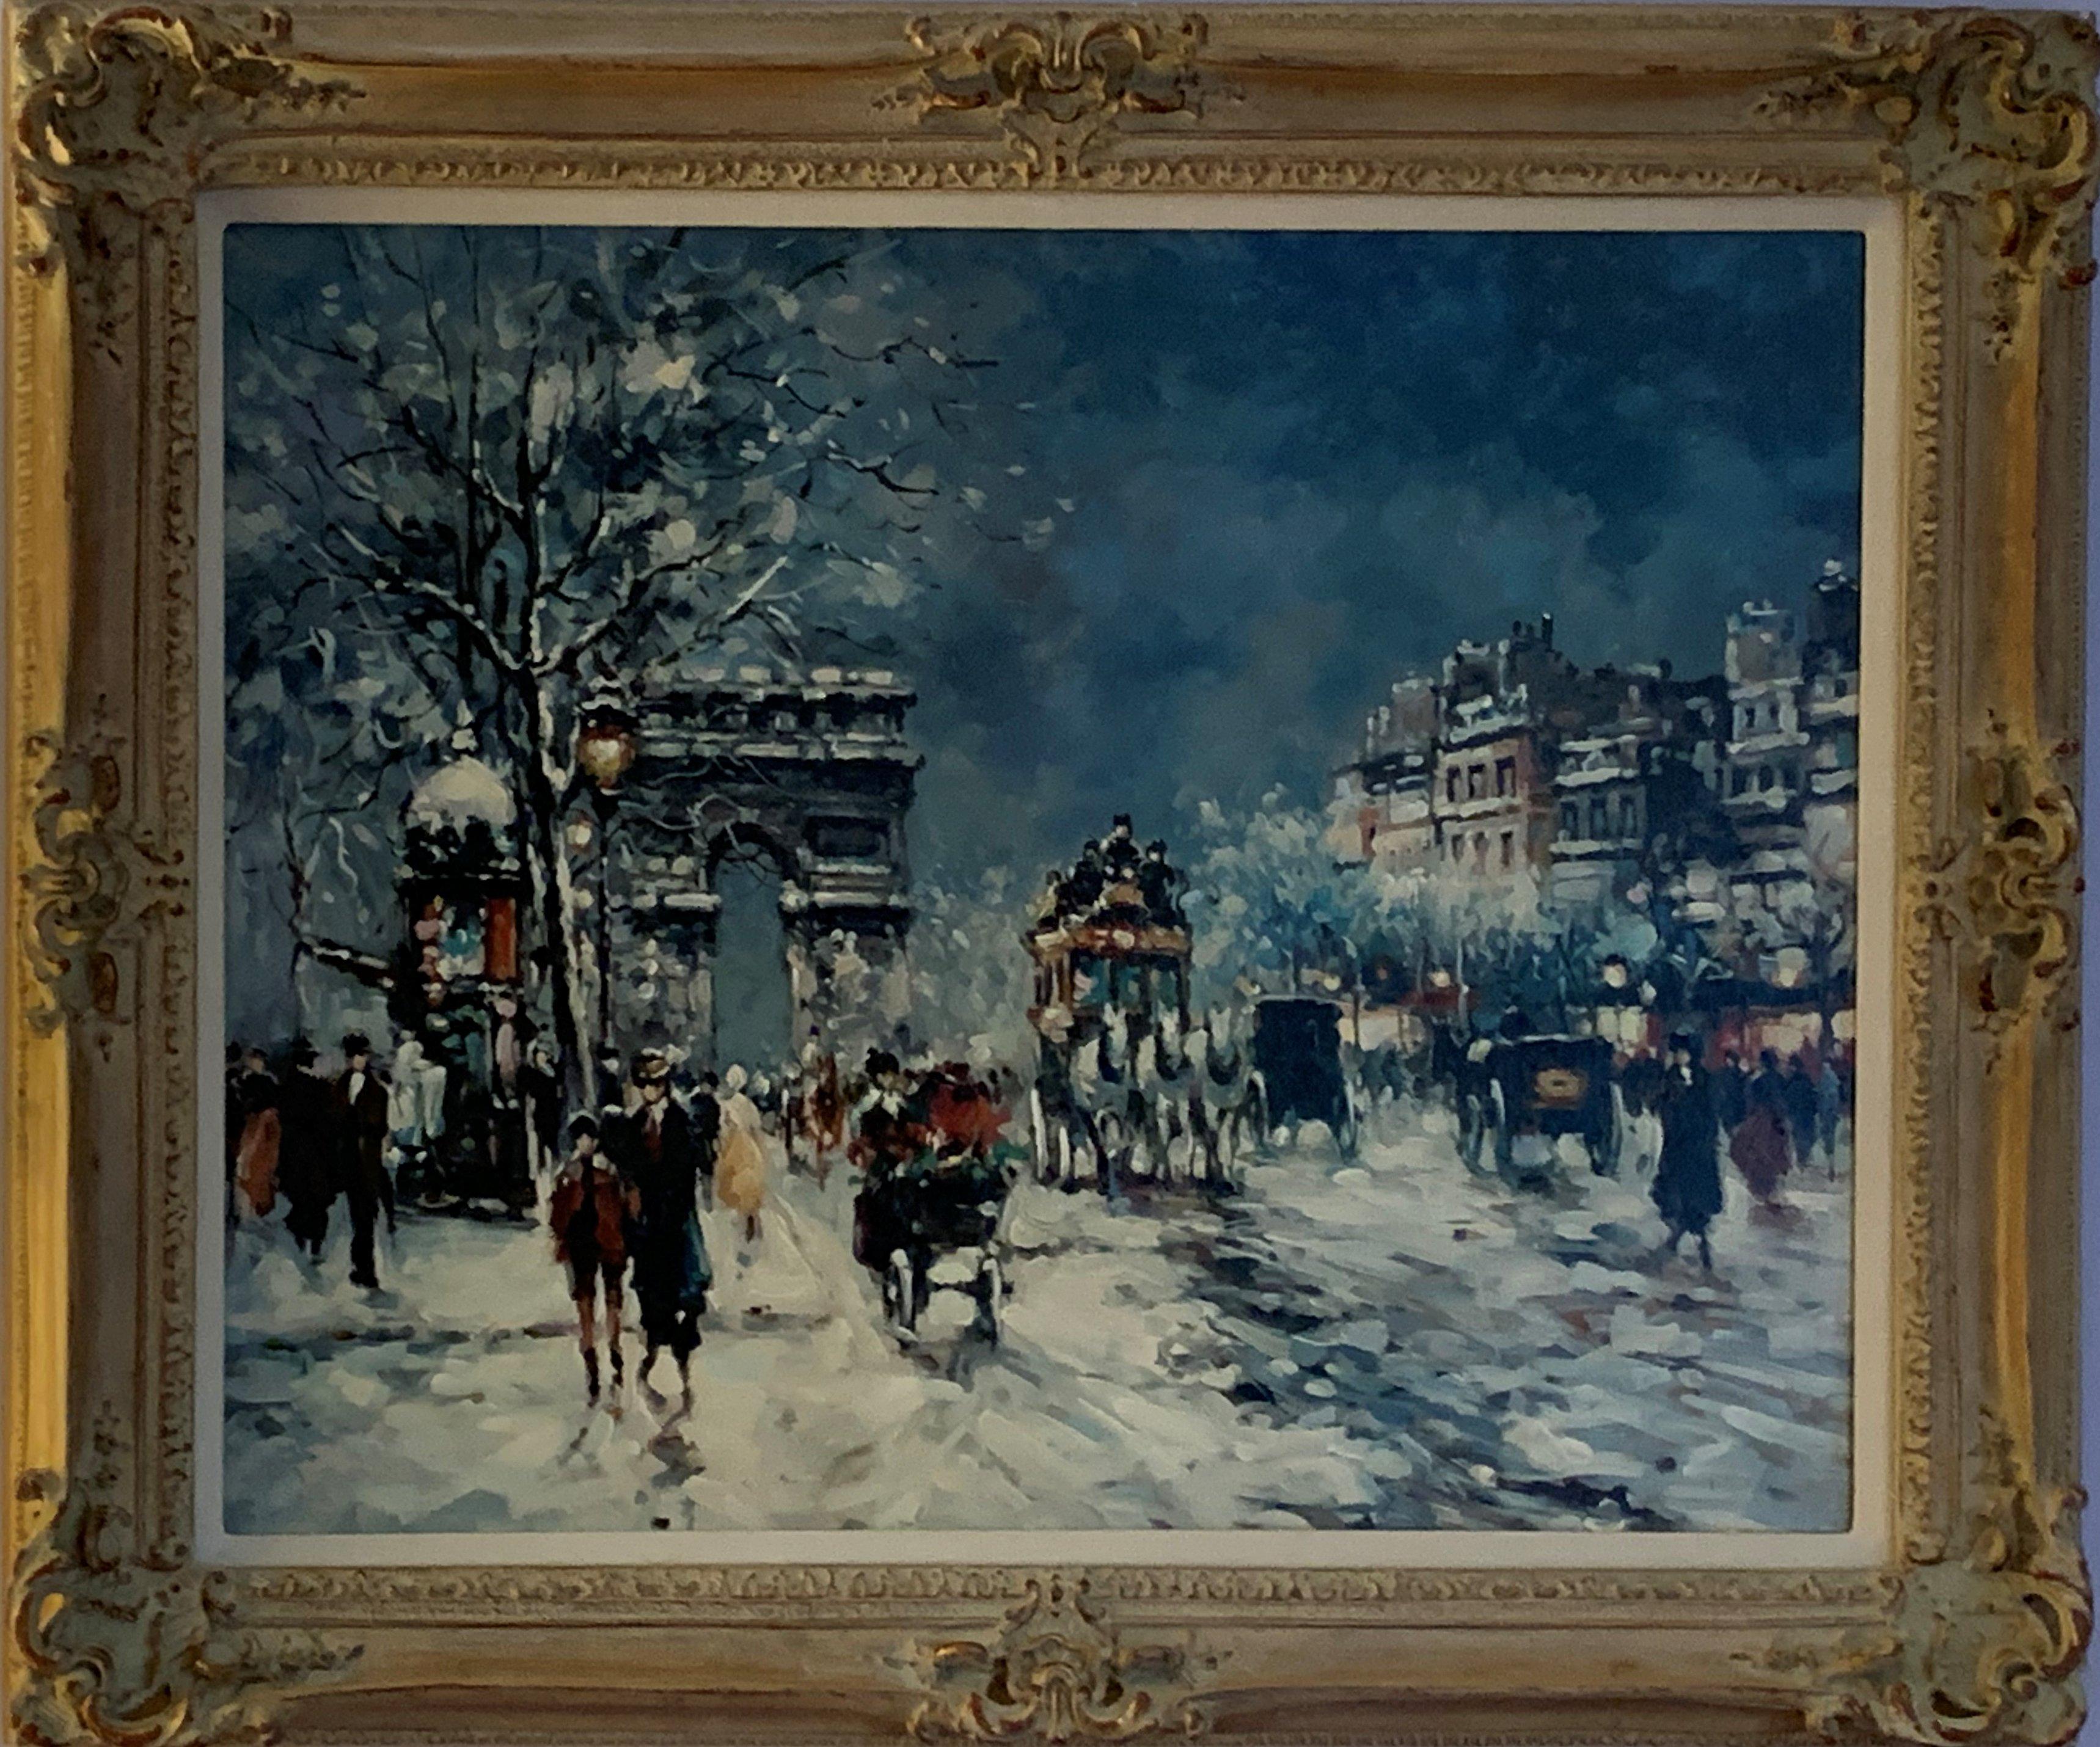 Paris Street Scene, Winter Nocturne, Arc de Triomphe, Champs-Élysées, Snow Night - Painting by Unknown